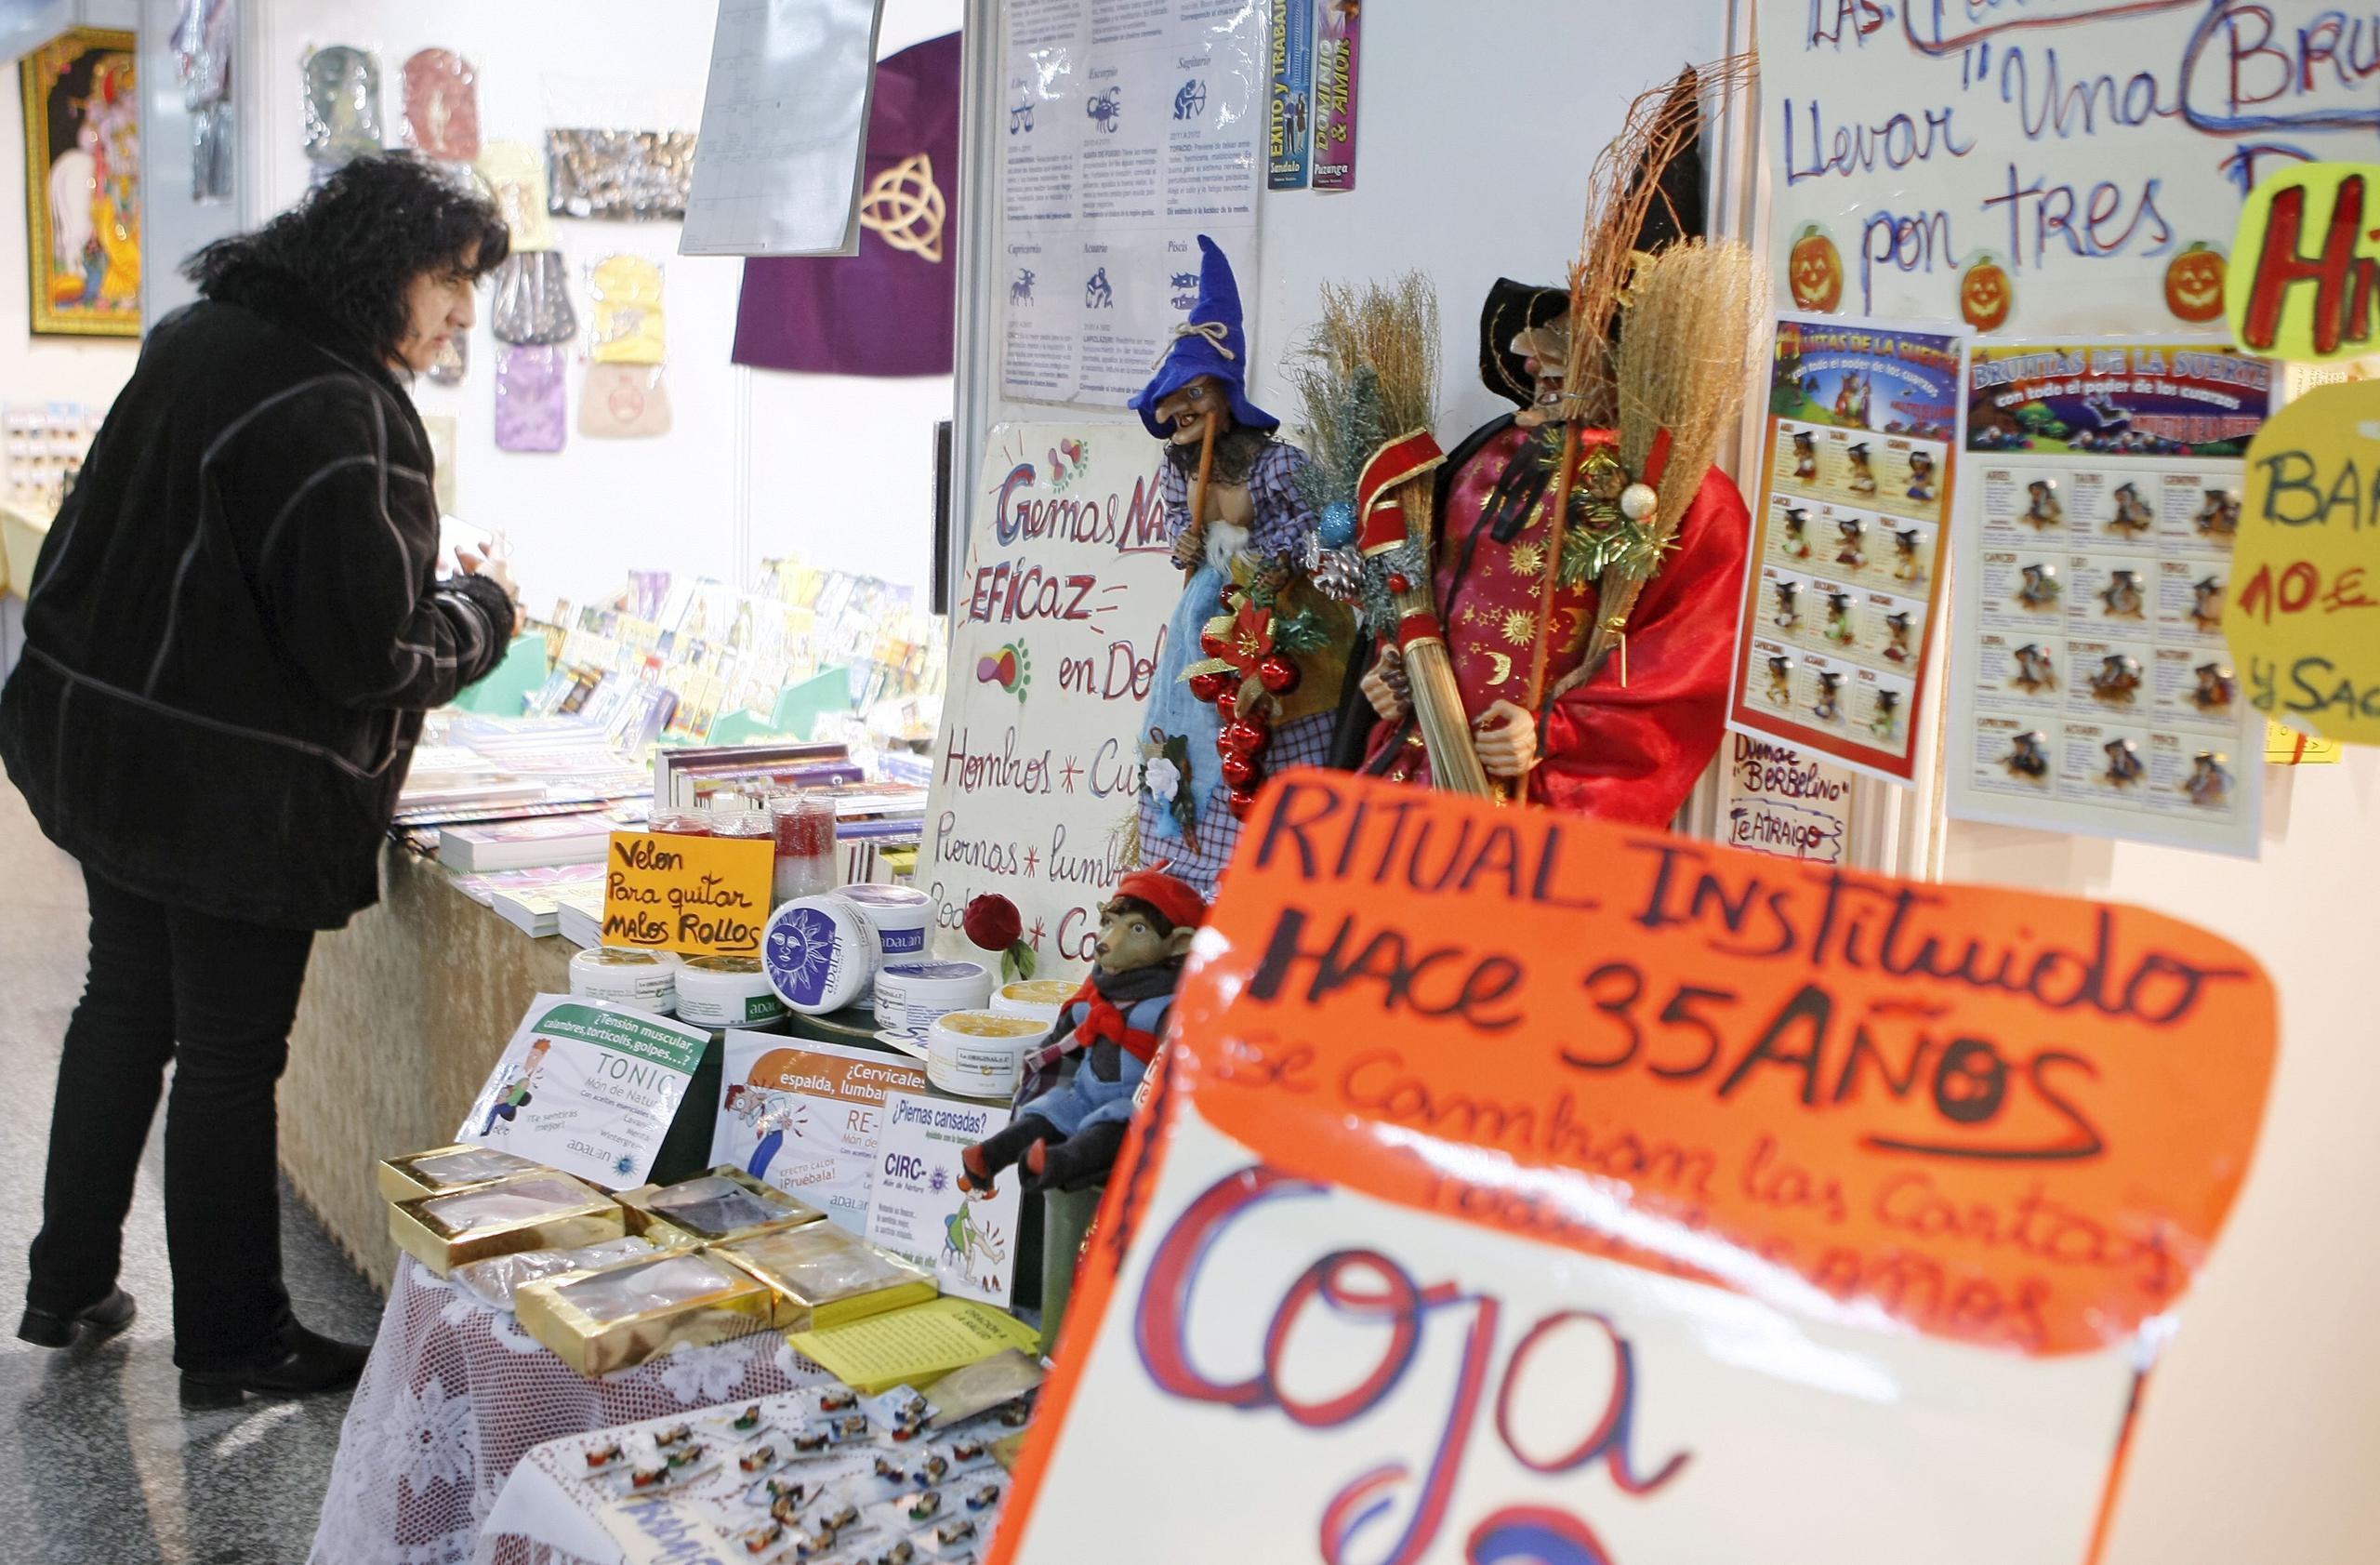 Una mujer observa unmostrador de objetos a la venta relacionados a ciencias ocultas y espirituales.